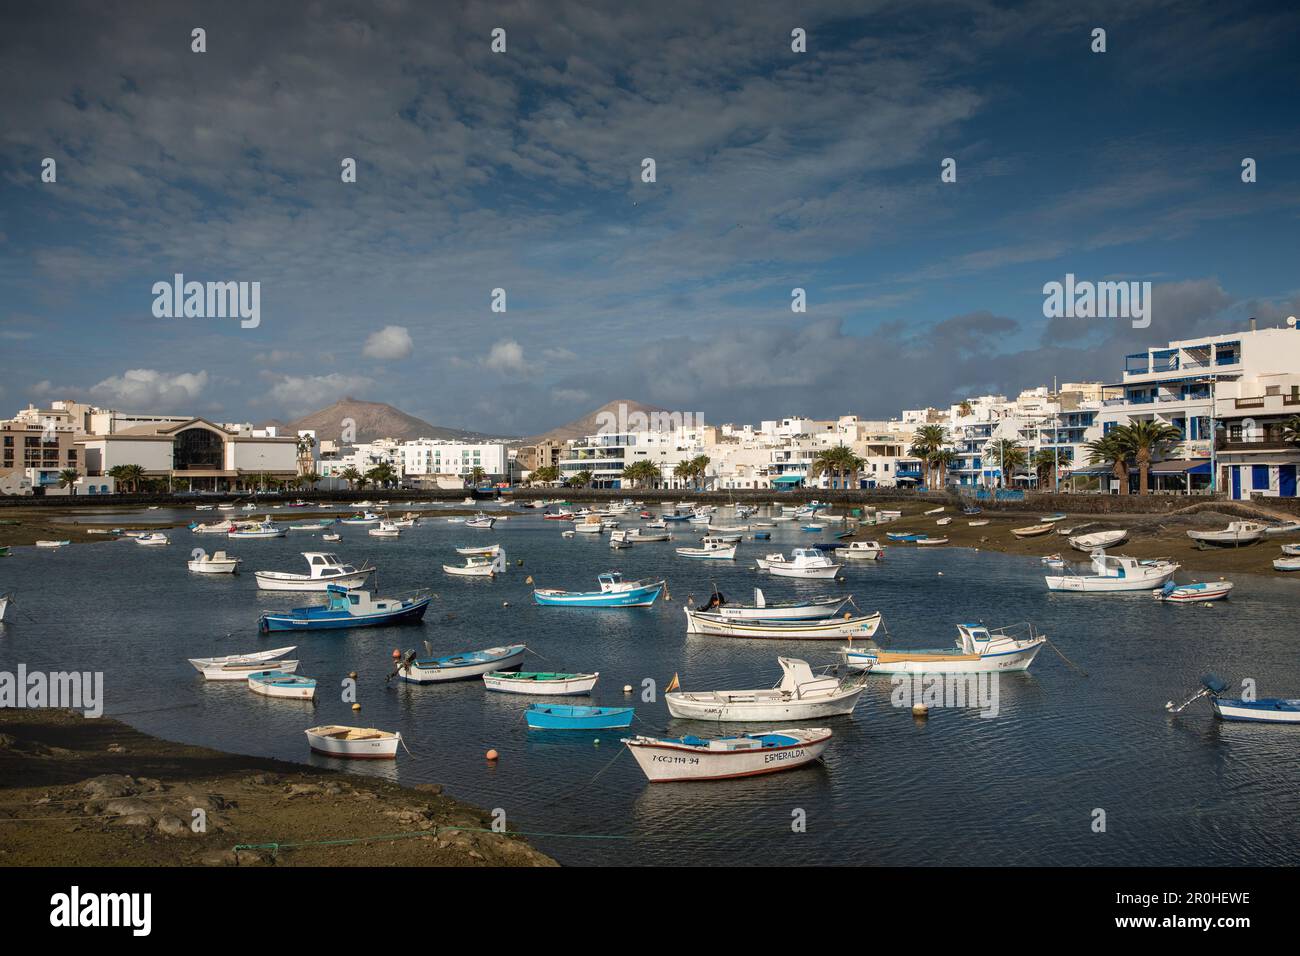 Antiguo puerto pesquero Charco de San gins con una gran cantidad de barcos, Islas Canarias, Lanzarote, Arrecife Foto de stock